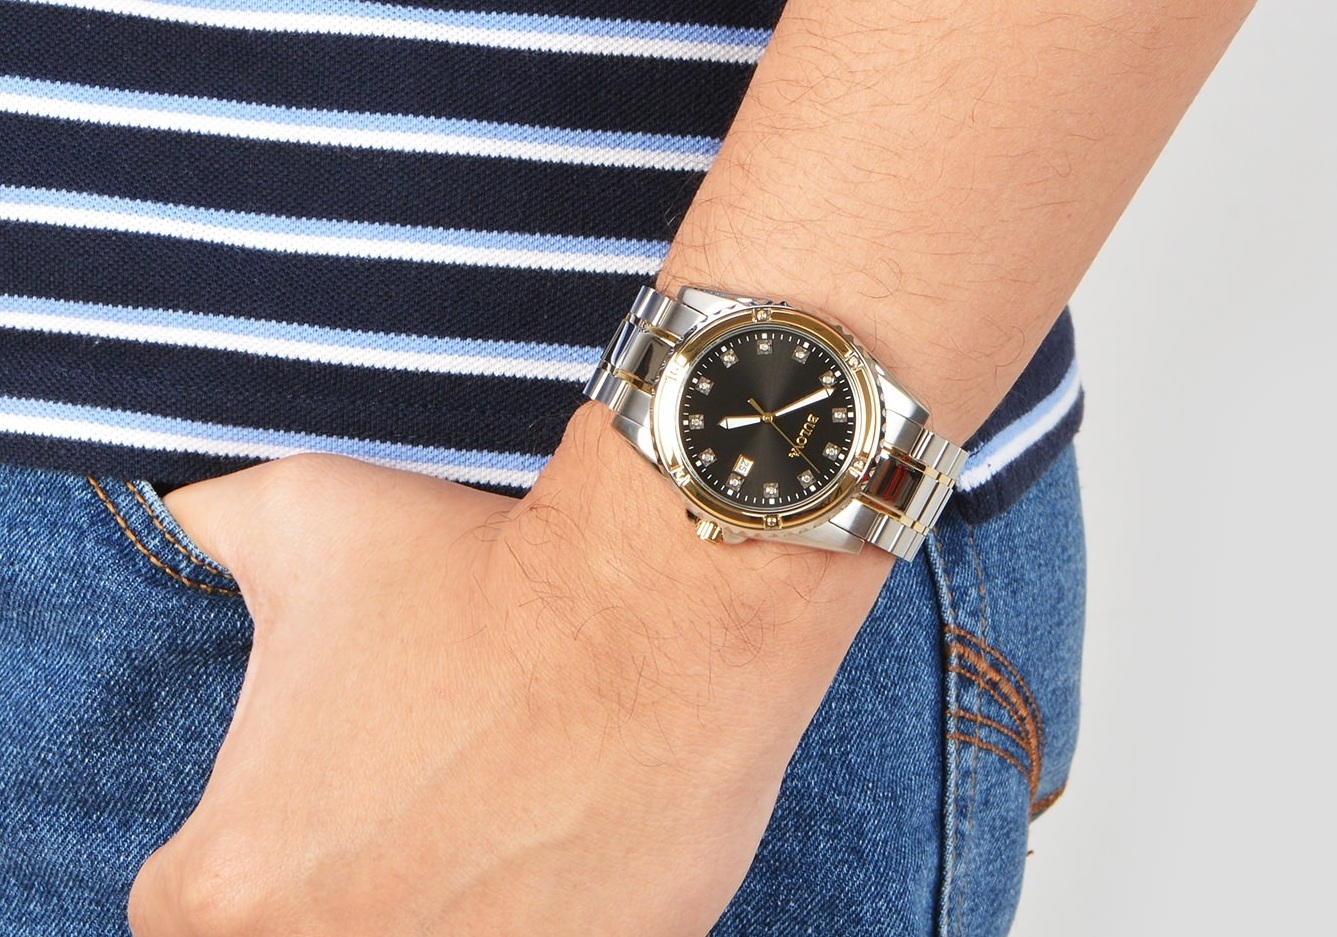 Chiếc đồng hồ Bulova nam 98D122 trên tay sang trọng, lịch lãm